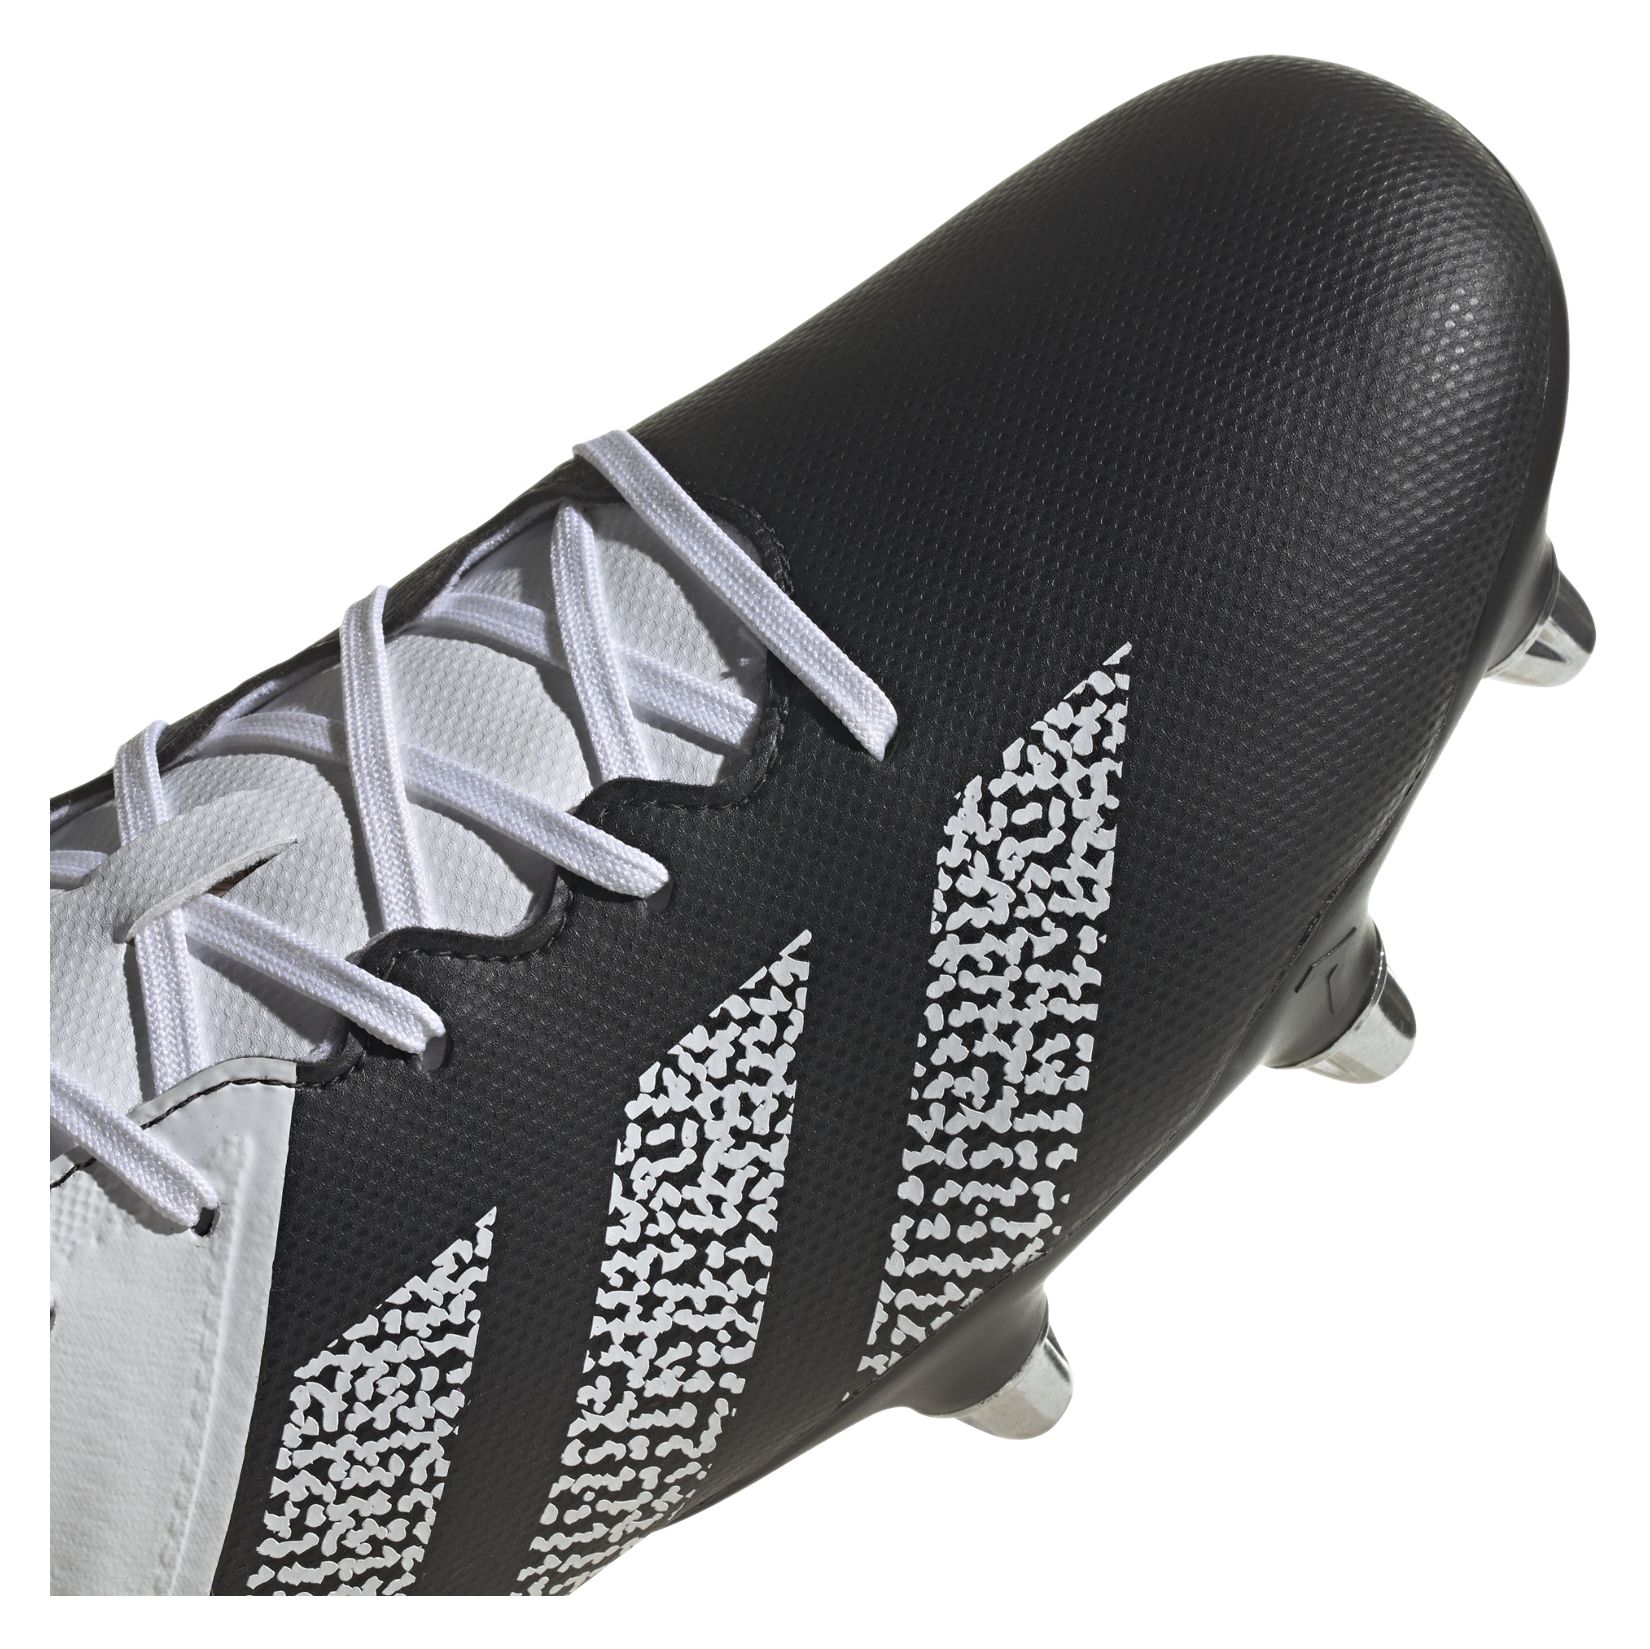 adidas-LP Kakari Elite Soft Ground Rugby Boots